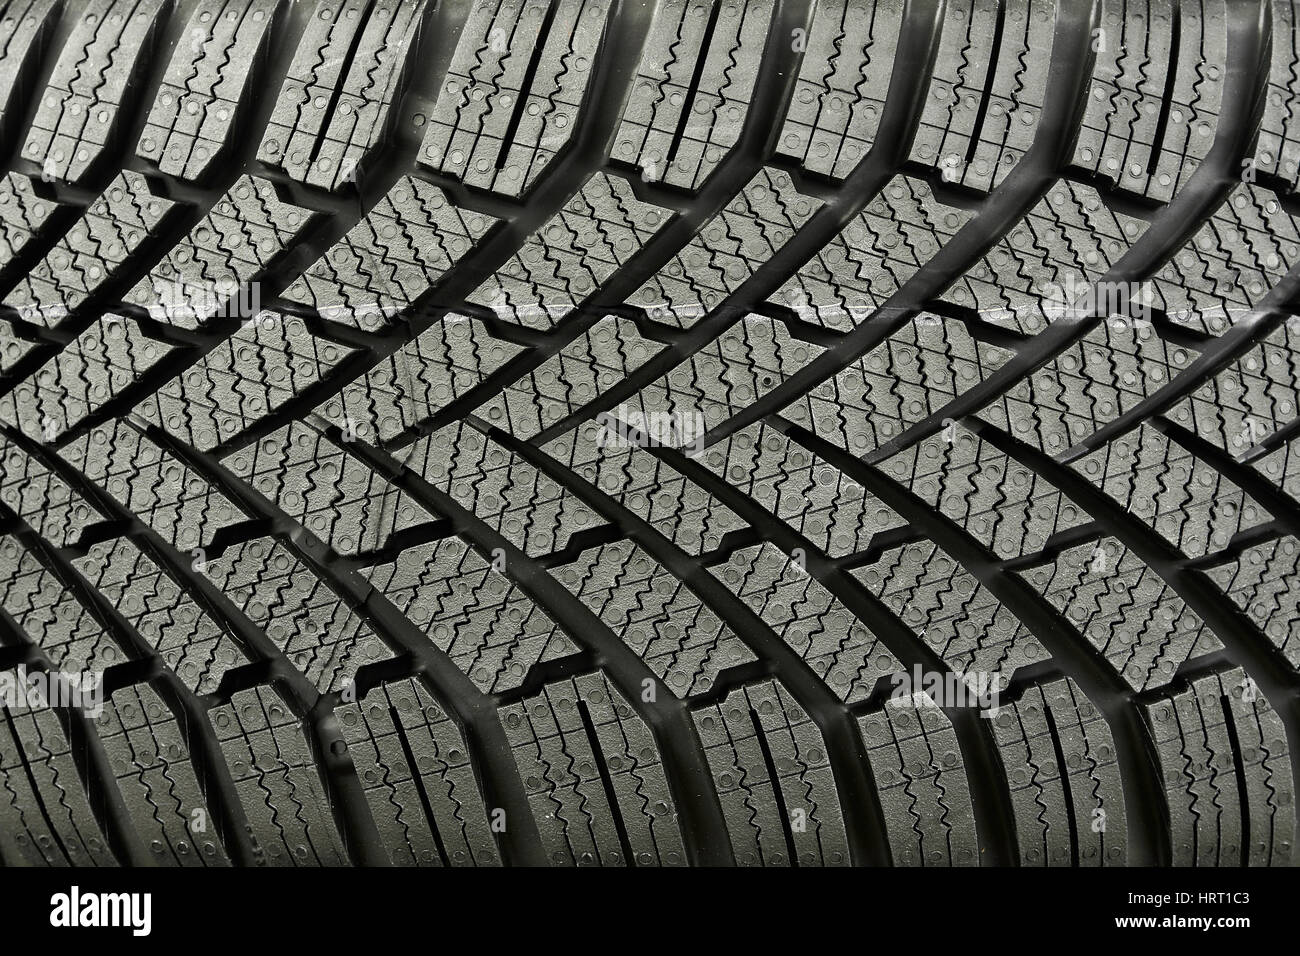 Auto Reifen Textur Stockfotografie - Alamy